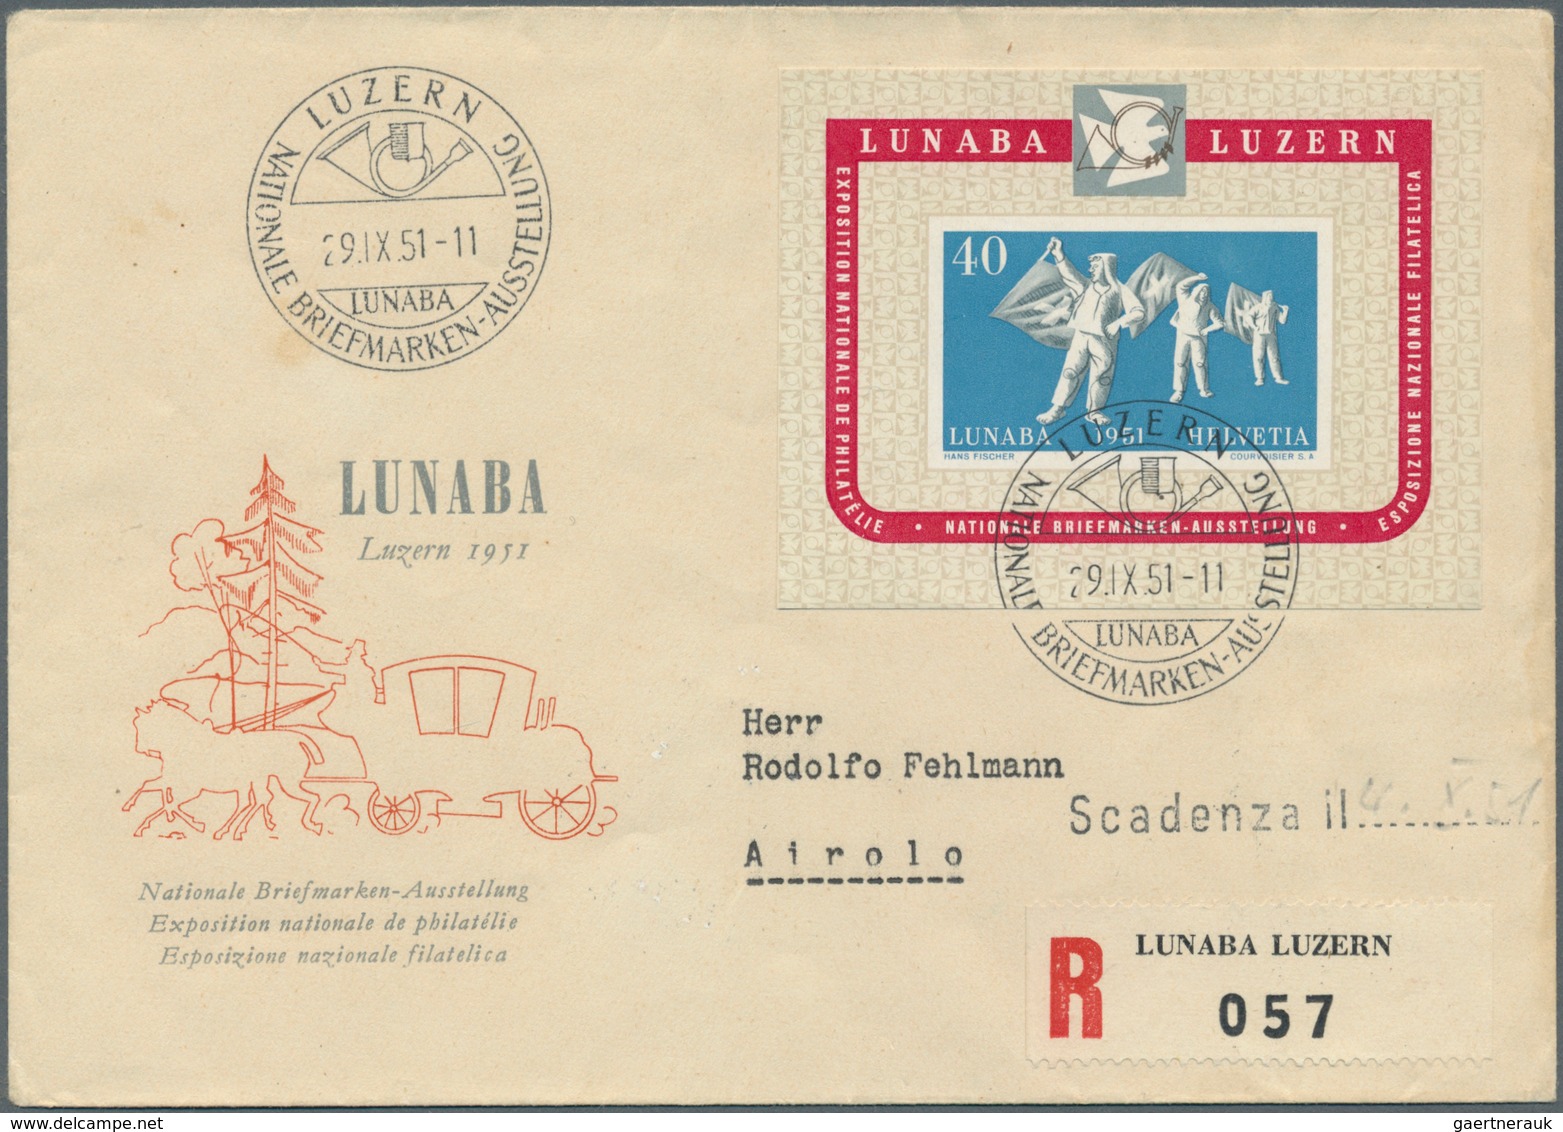 28080 Schweiz: 1912-1962 (meist): Umfangreiche Kollektion von rund 230 Briefen, Postkarten und FDCs, dabei